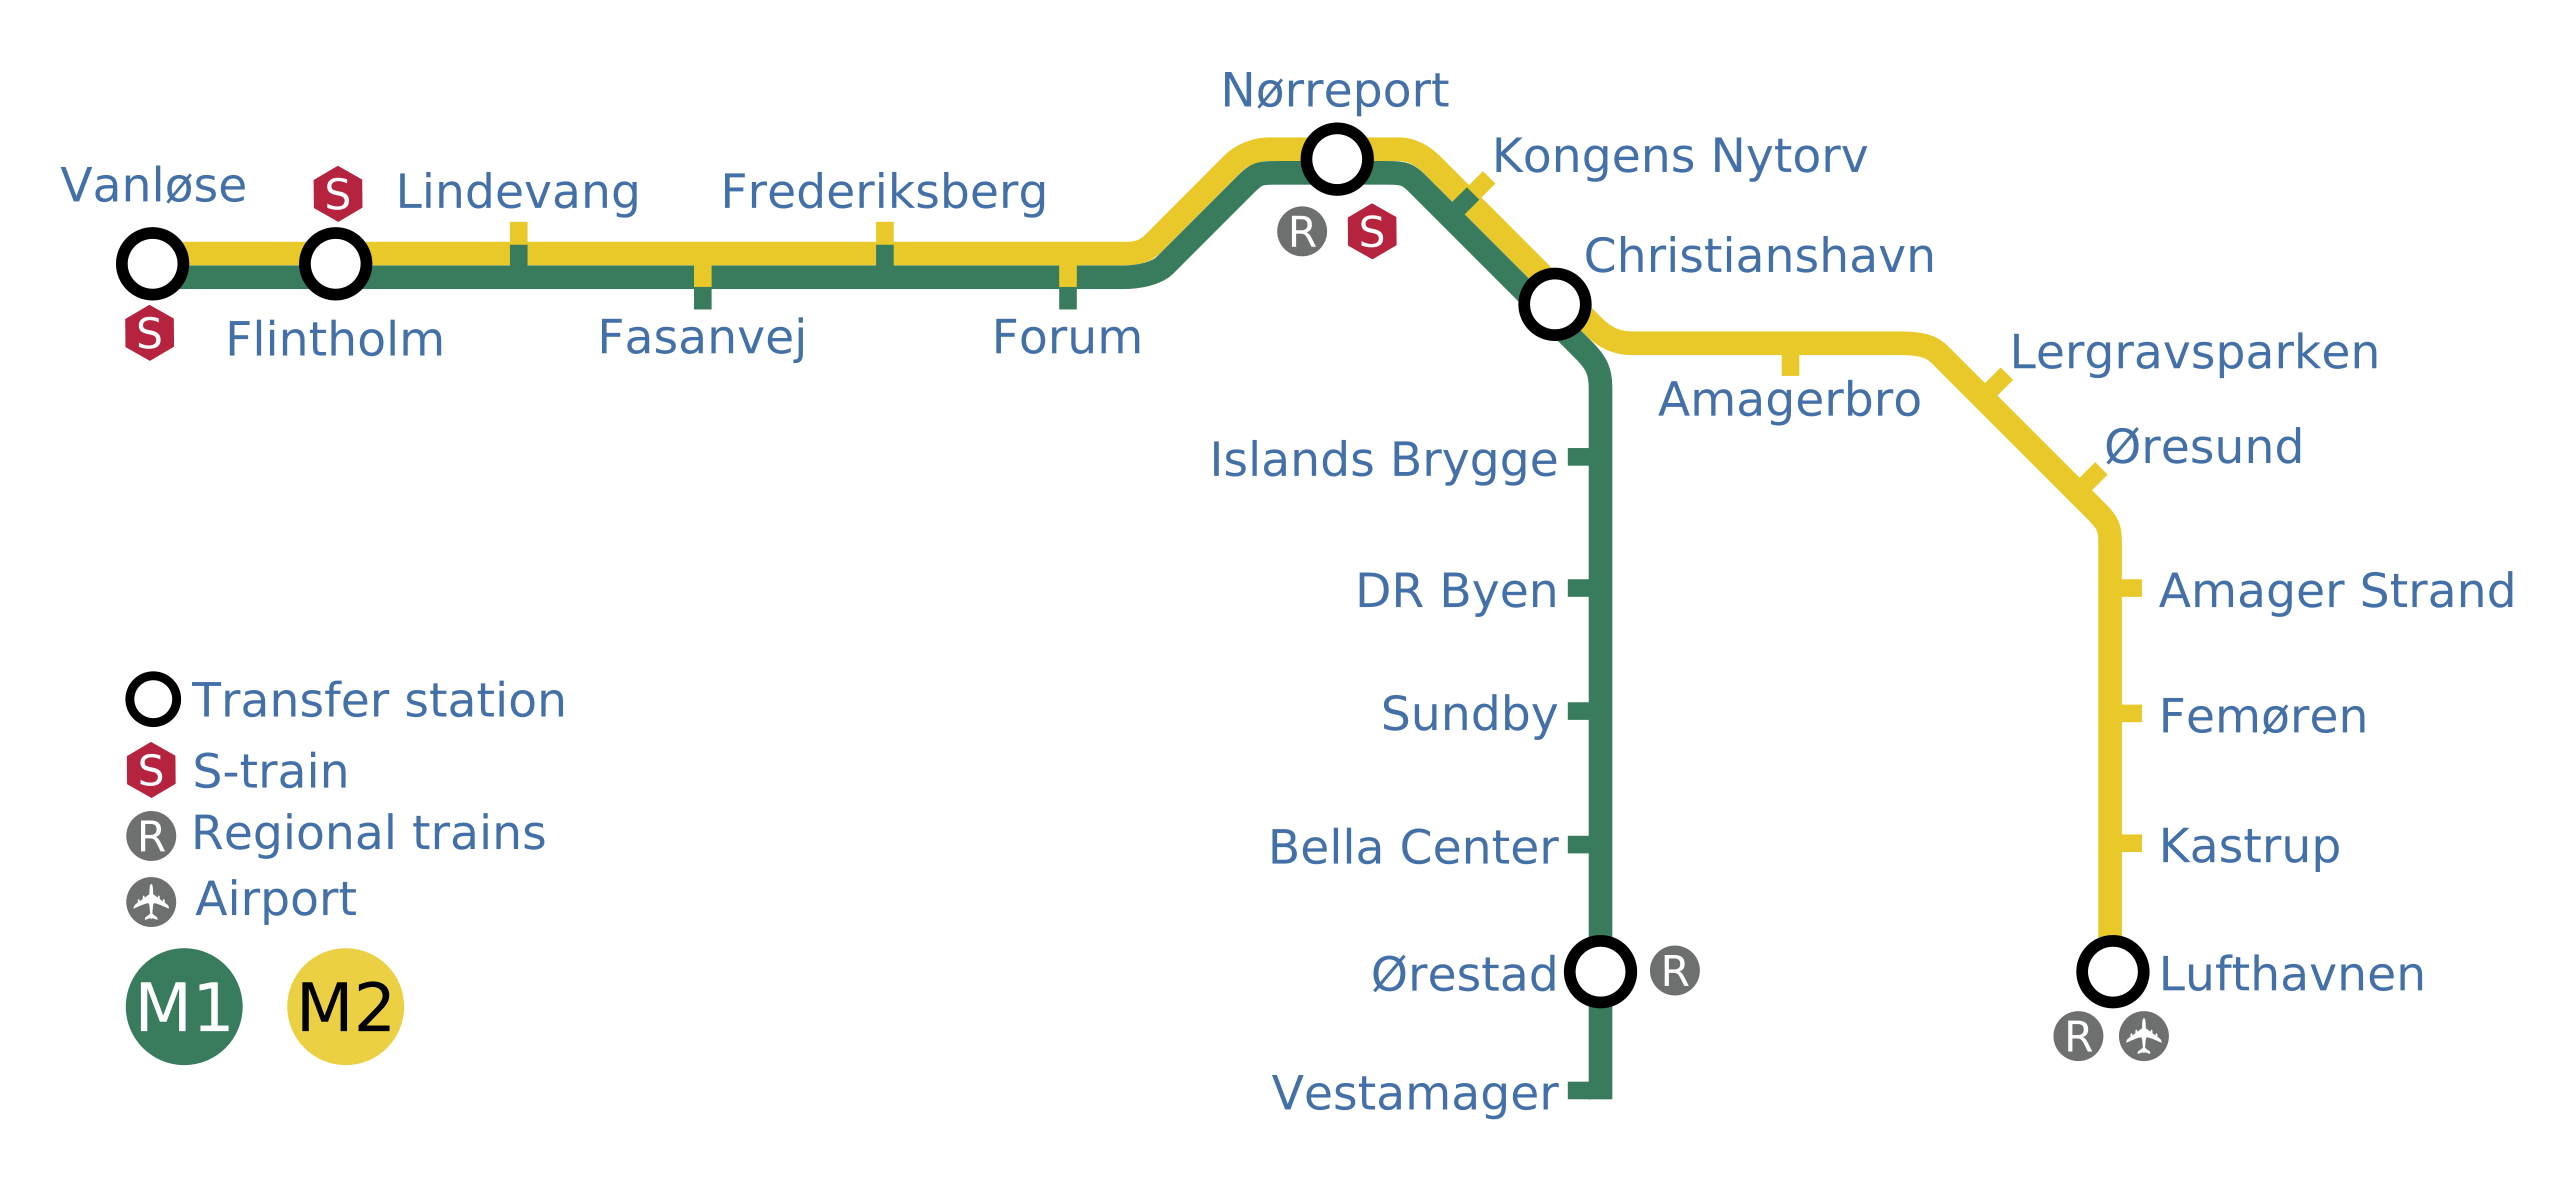 Esitellä 57+ imagen kööpenhaminan metro kartta - Viaterra.mx